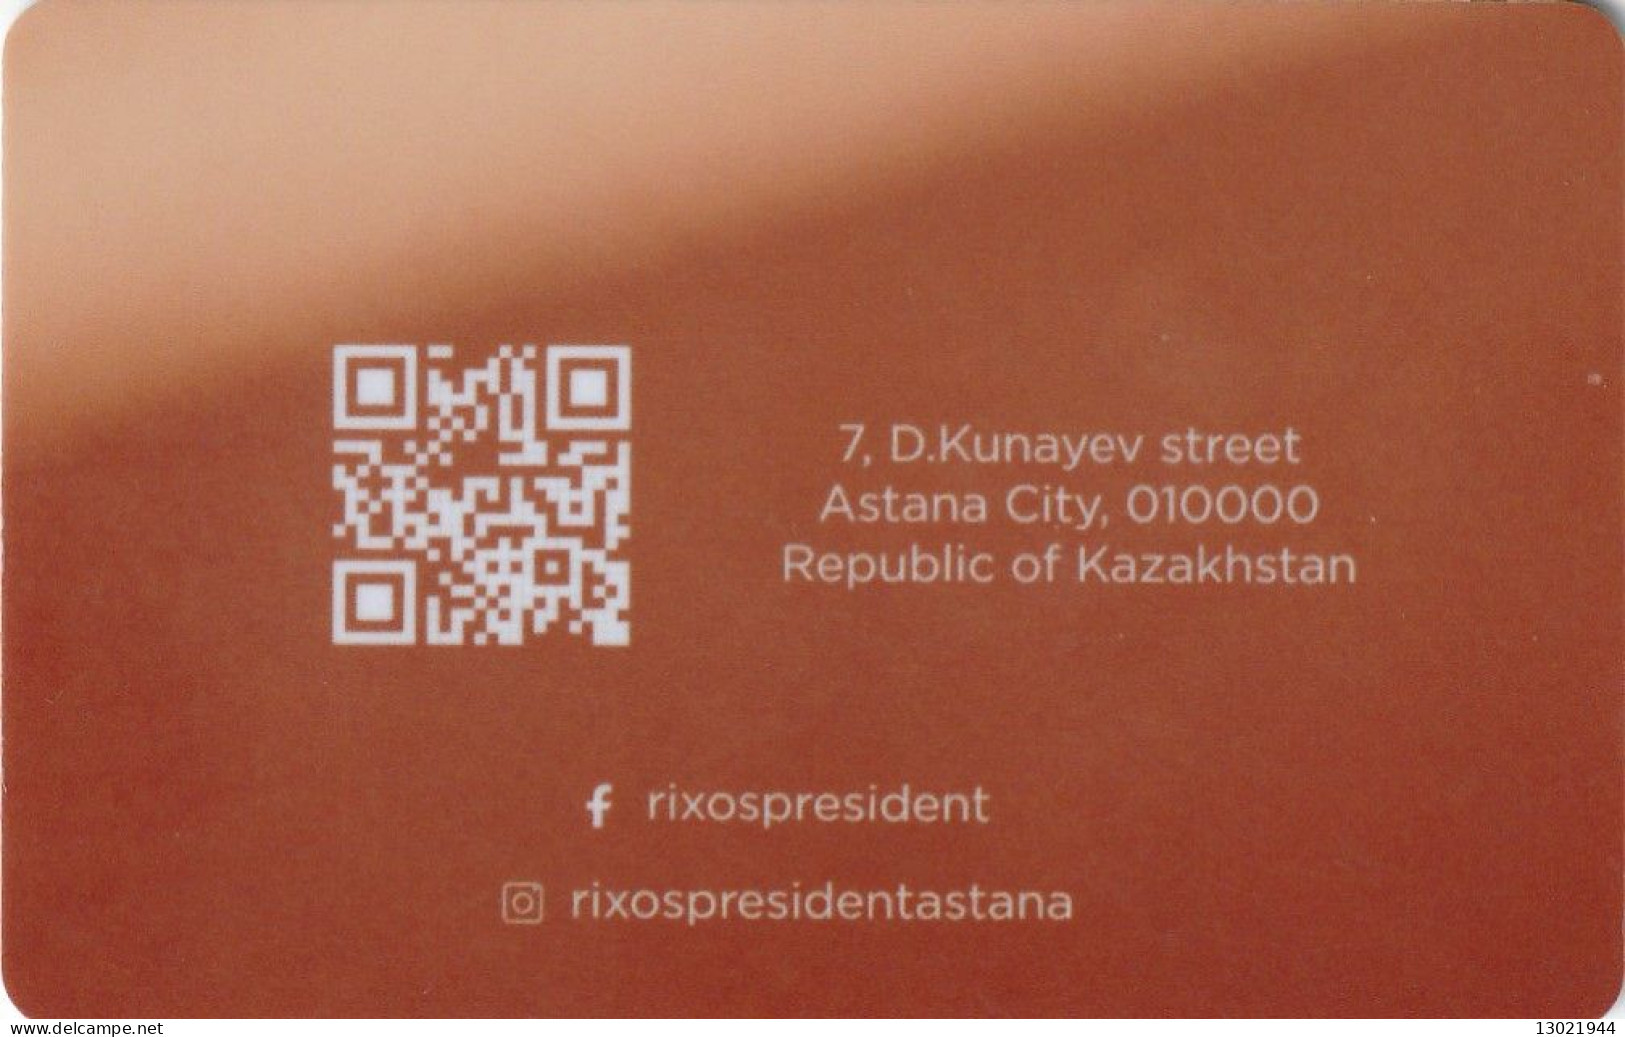 KAZAKISTAN  KEY HOTEL  Rixos President Astana - Cartas De Hotels